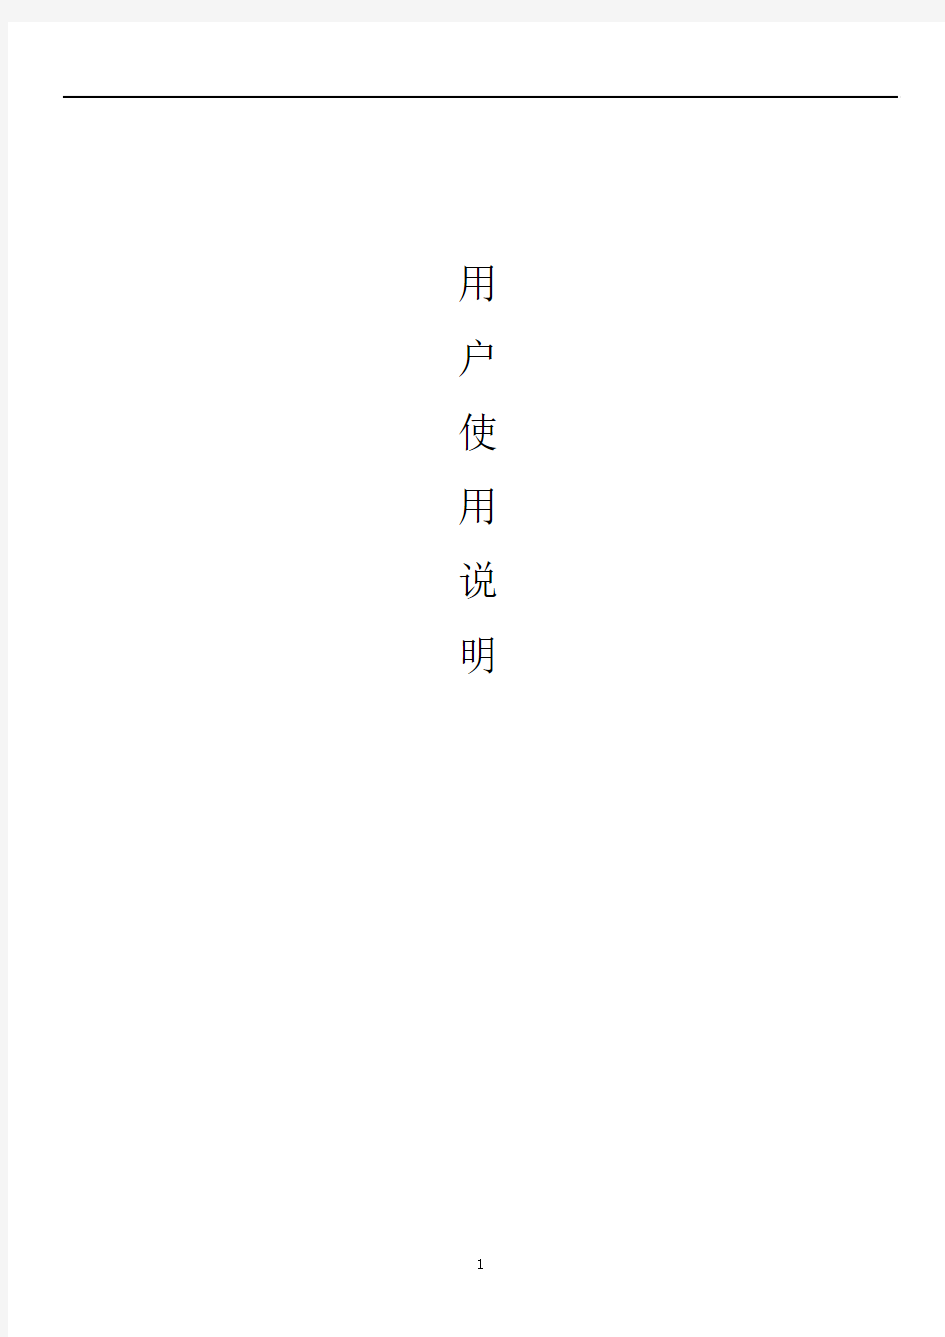 中文使用说明书(1)报告